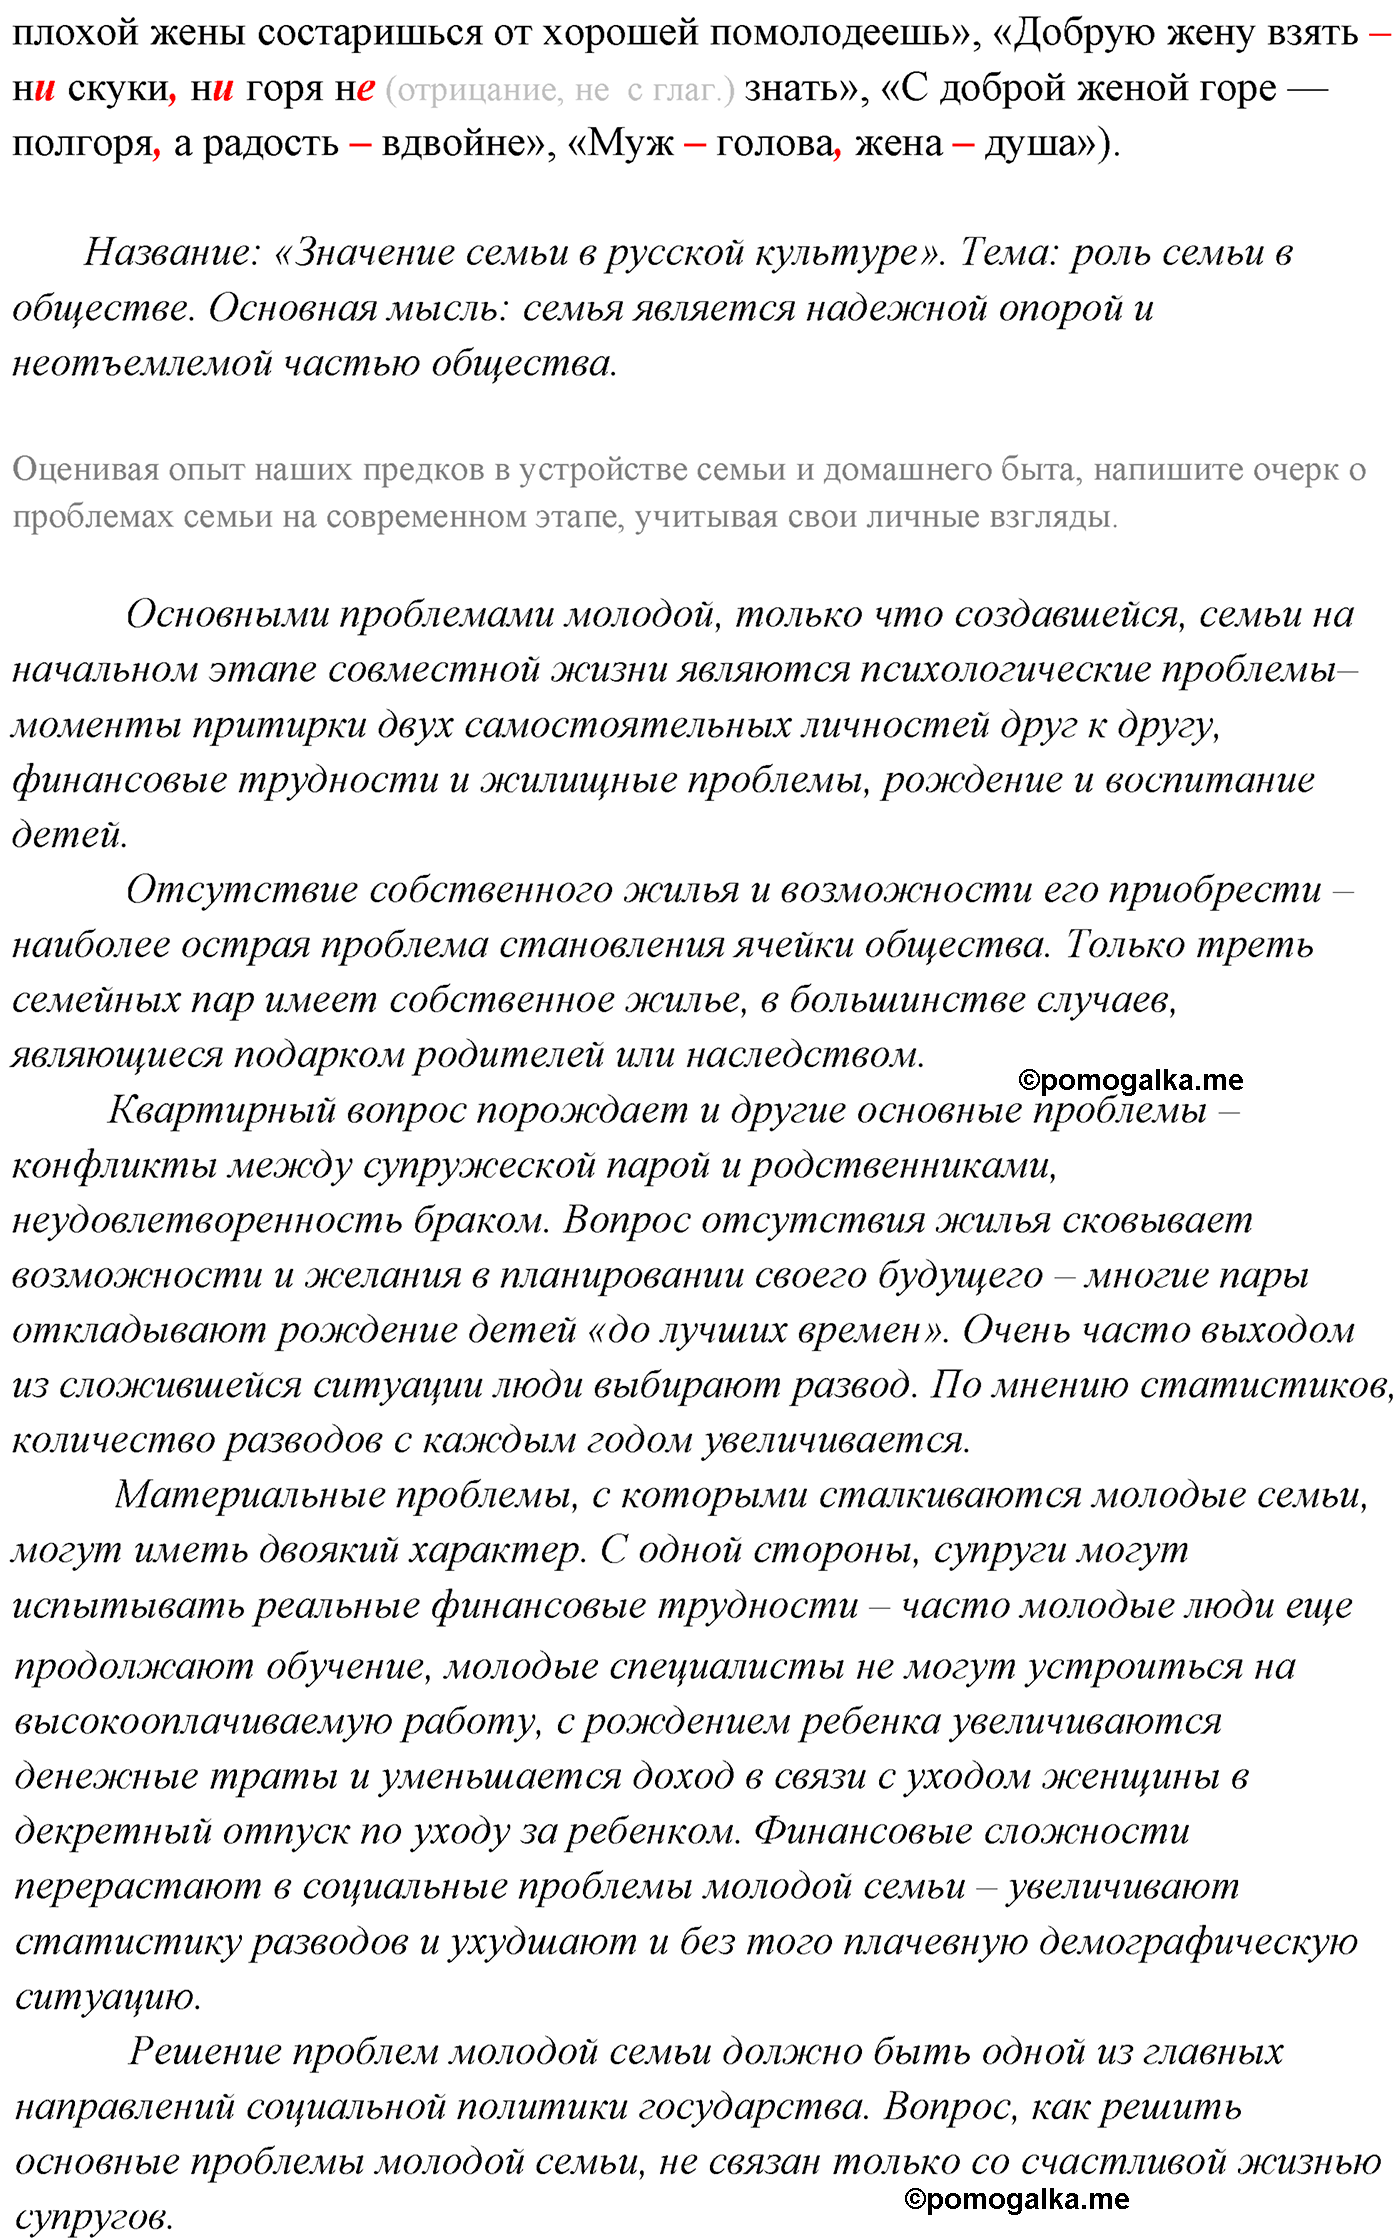 упражнение №203 русский язык 10-11 класс Власенков